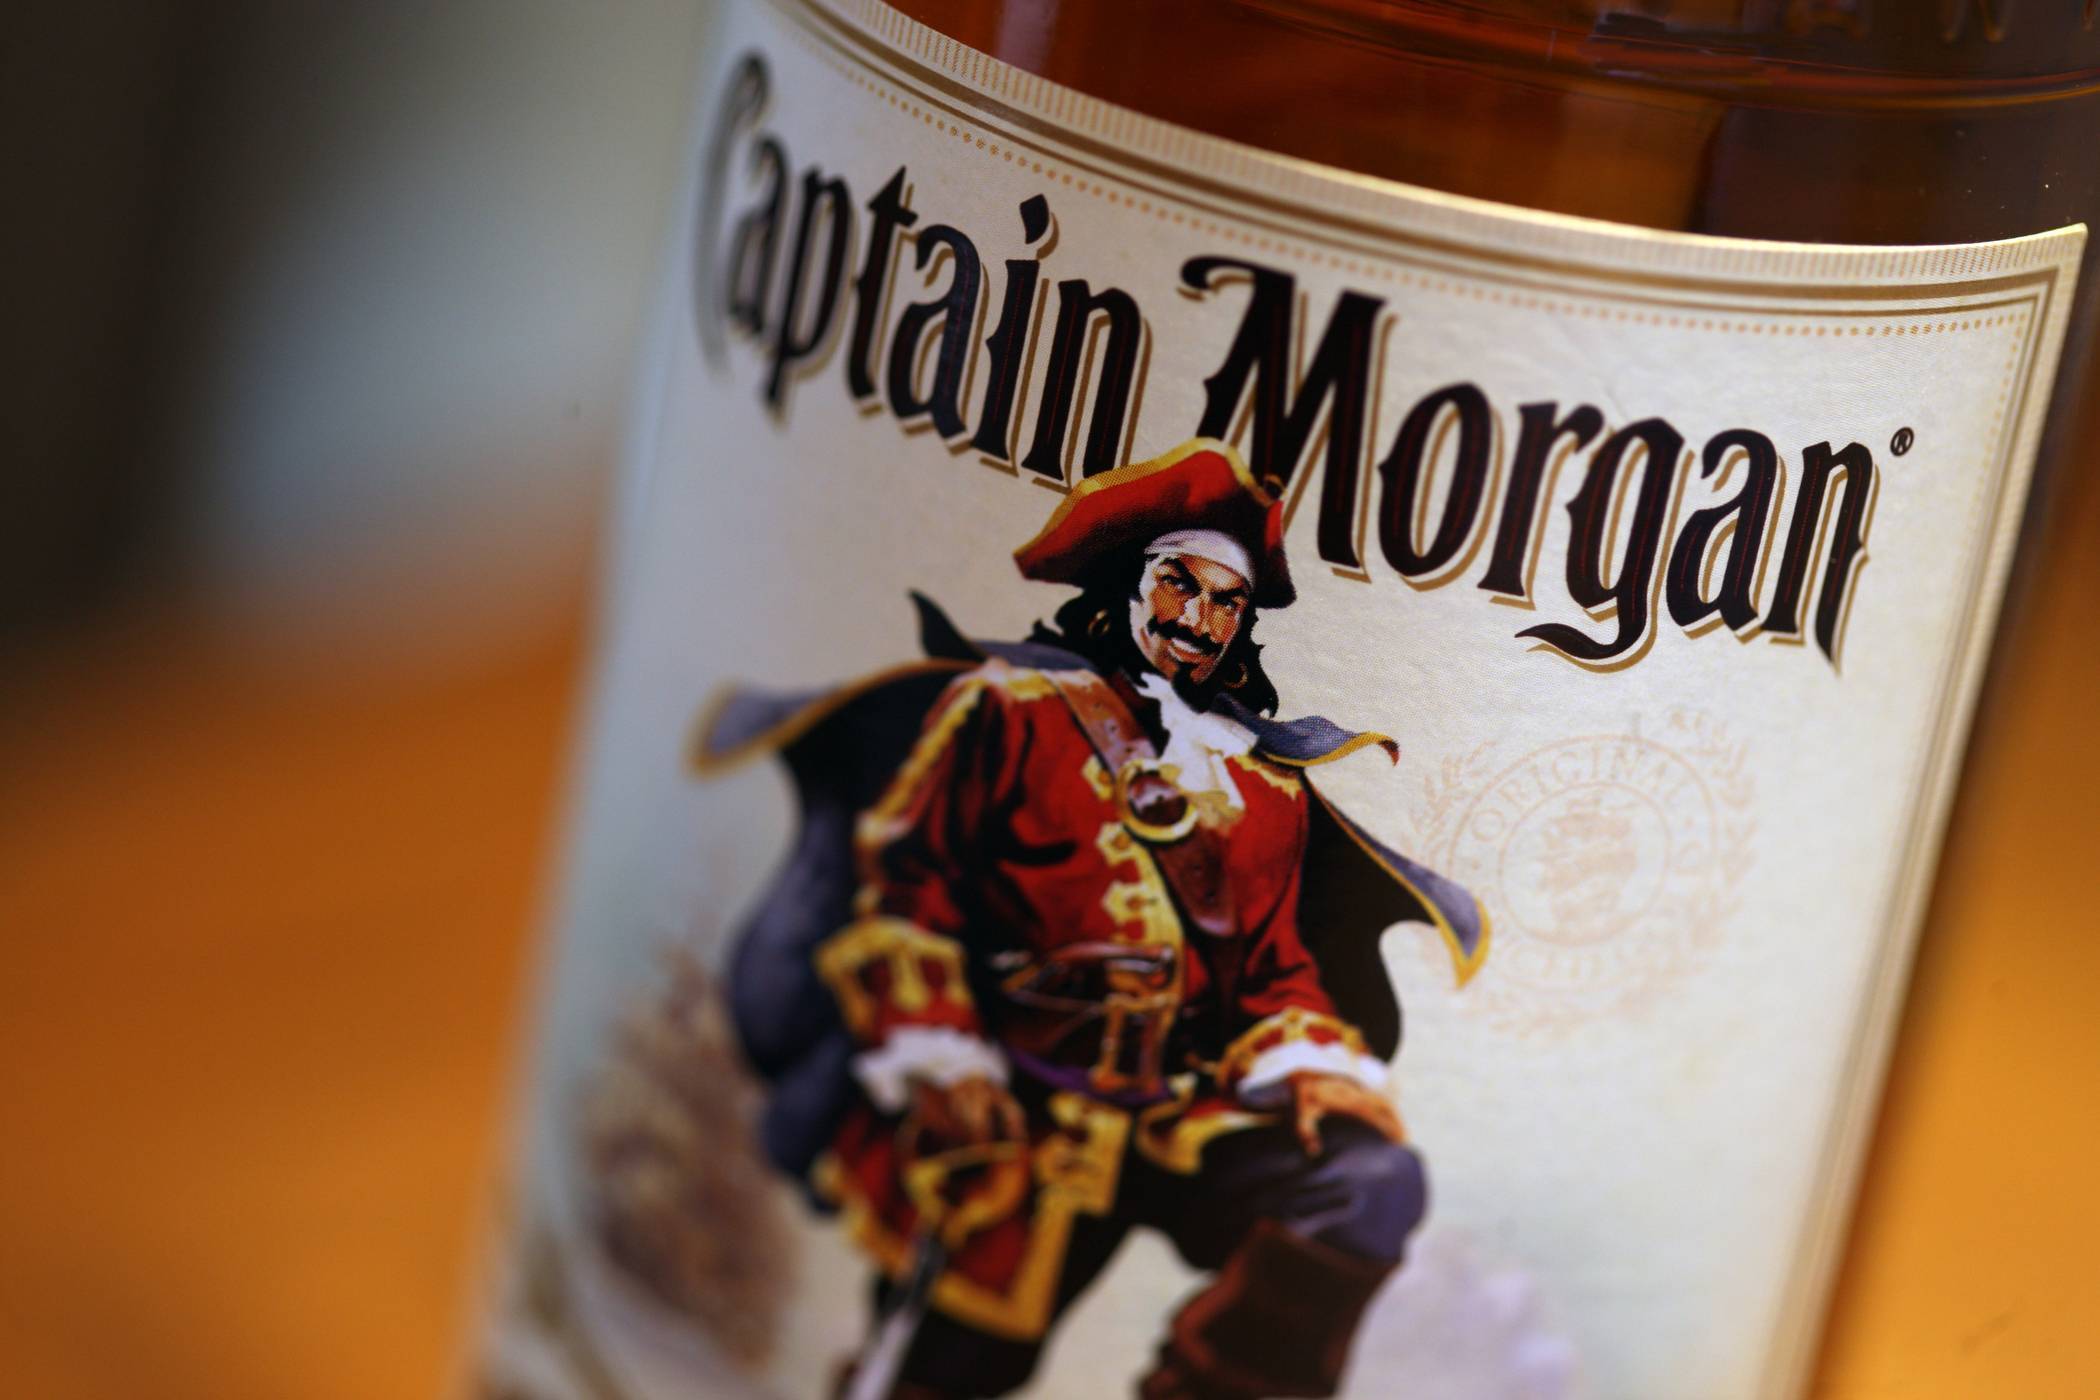 Как правильно пить ром, популярные сорта рома, сравнение "бакарди" и "капитана моргана"